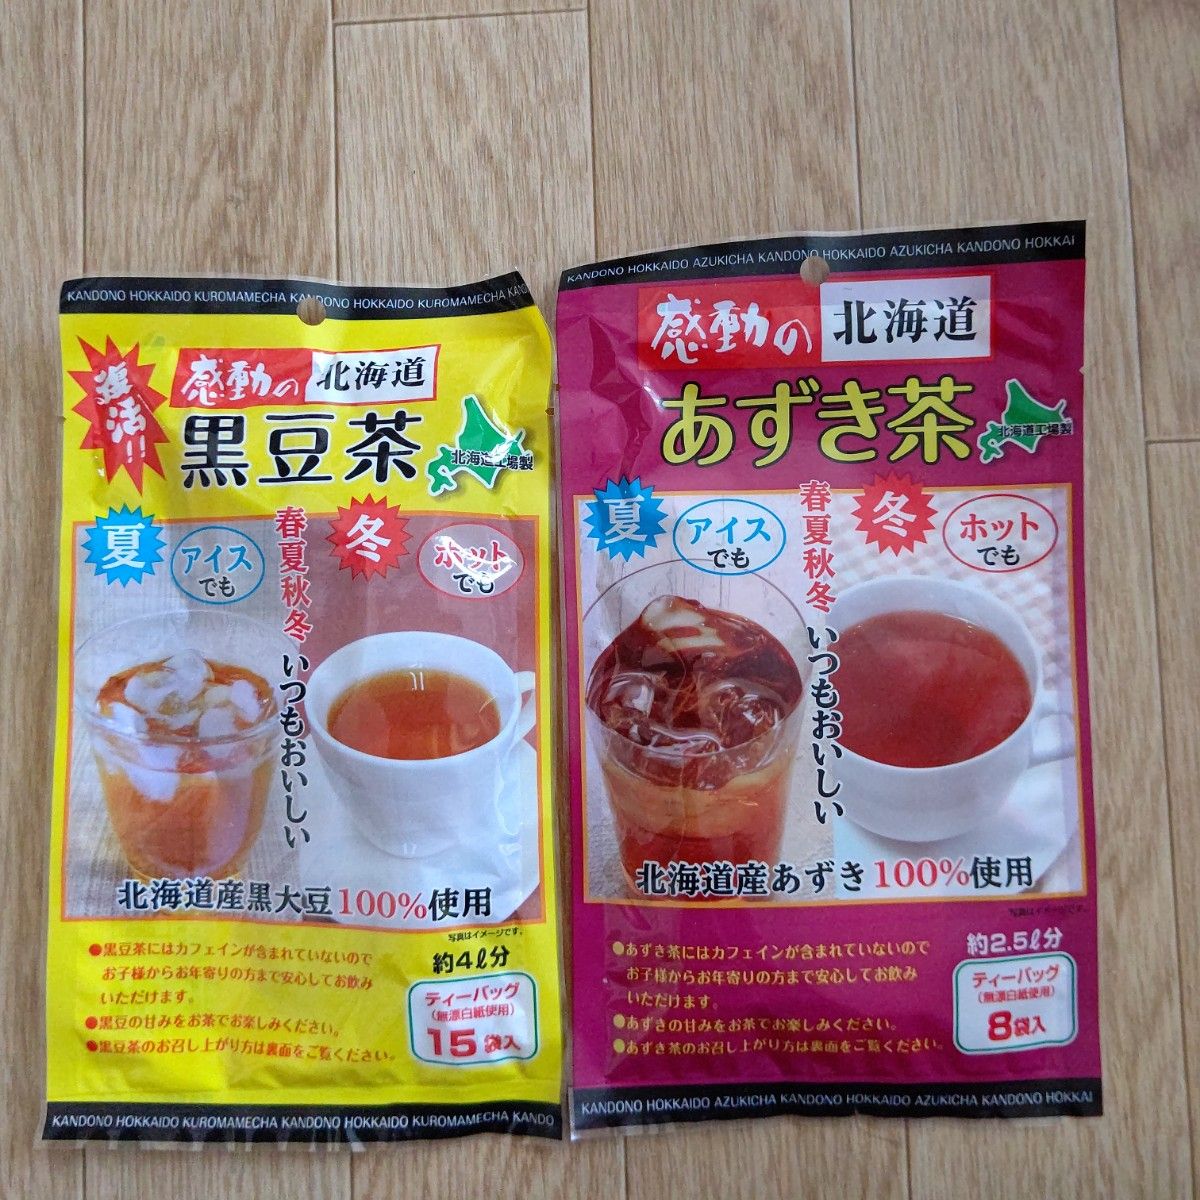 感動の北海道 黒豆茶ティーパック15袋入とあずき茶8袋入のセット